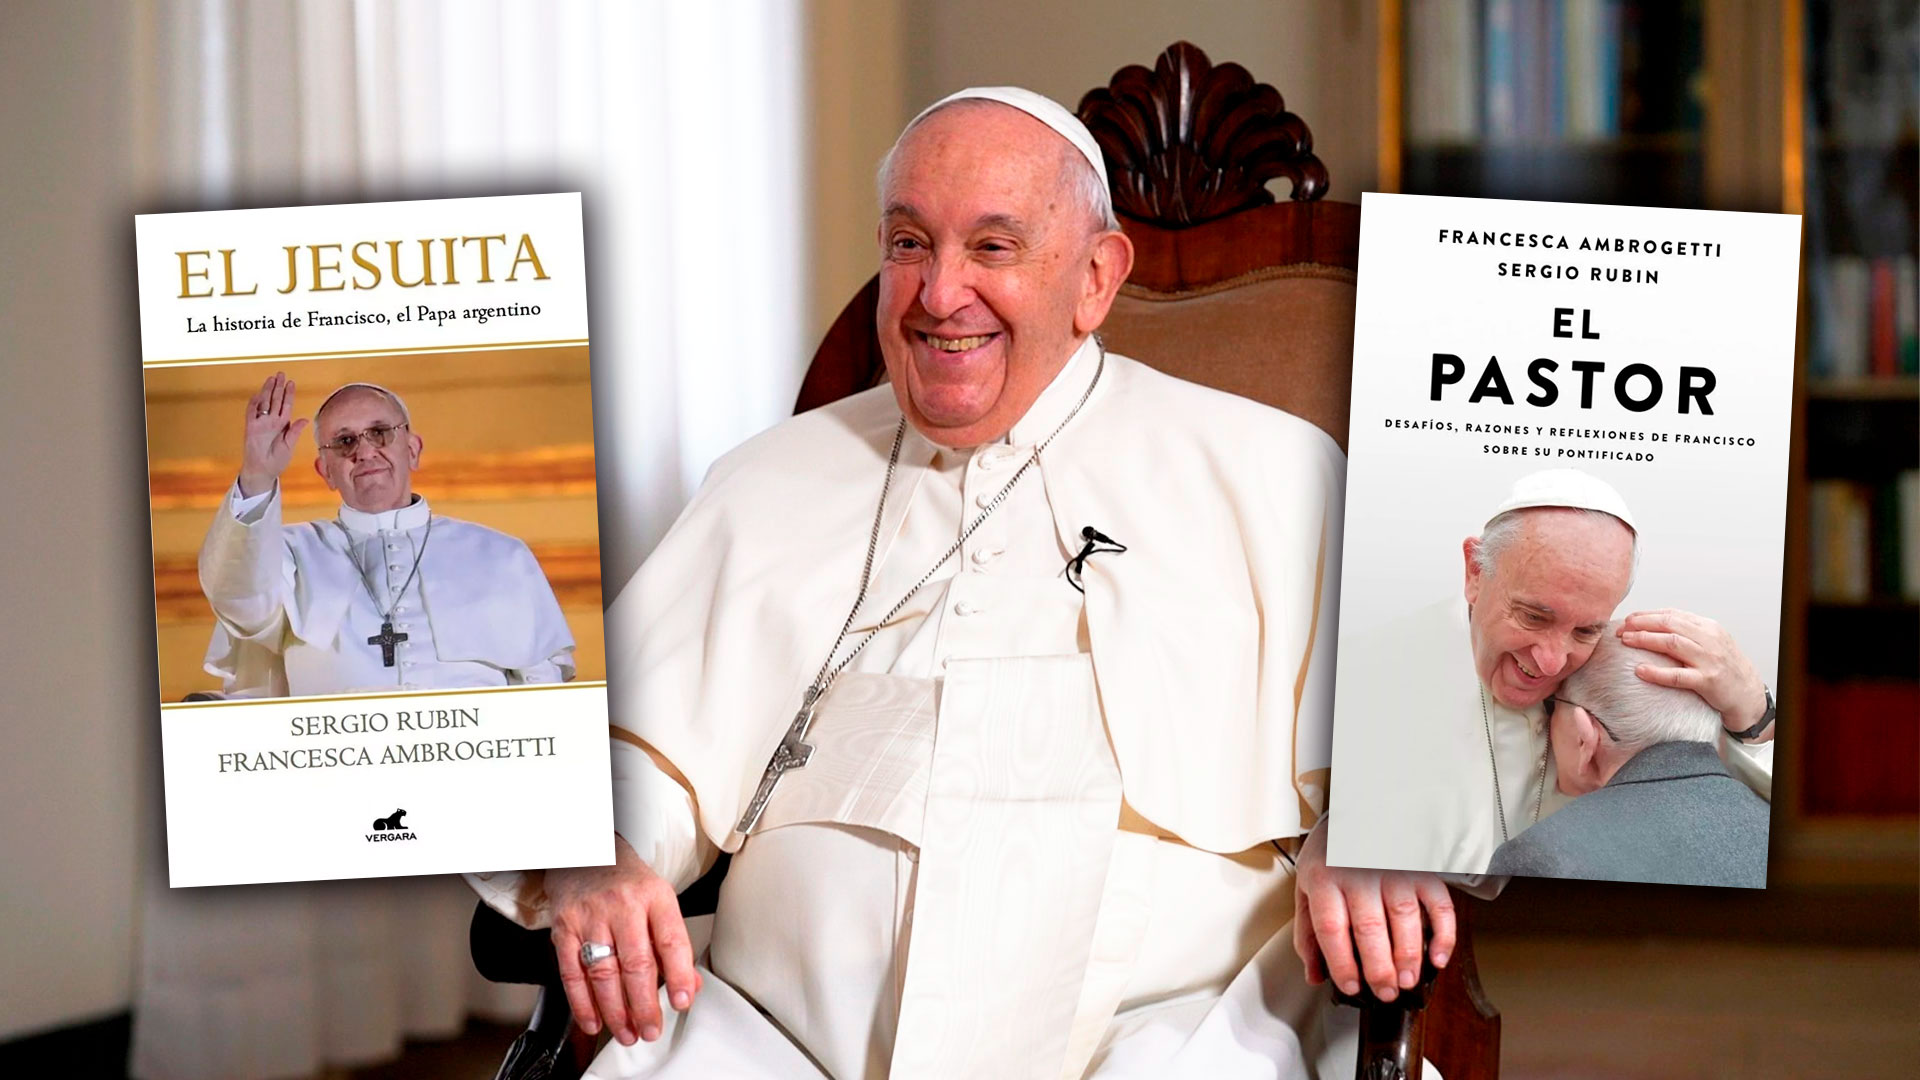 El libro “impensable” sobre el papa Francisco con una década de entrevistas: “Está haciendo que la Iglesia sea más universal que nunca”